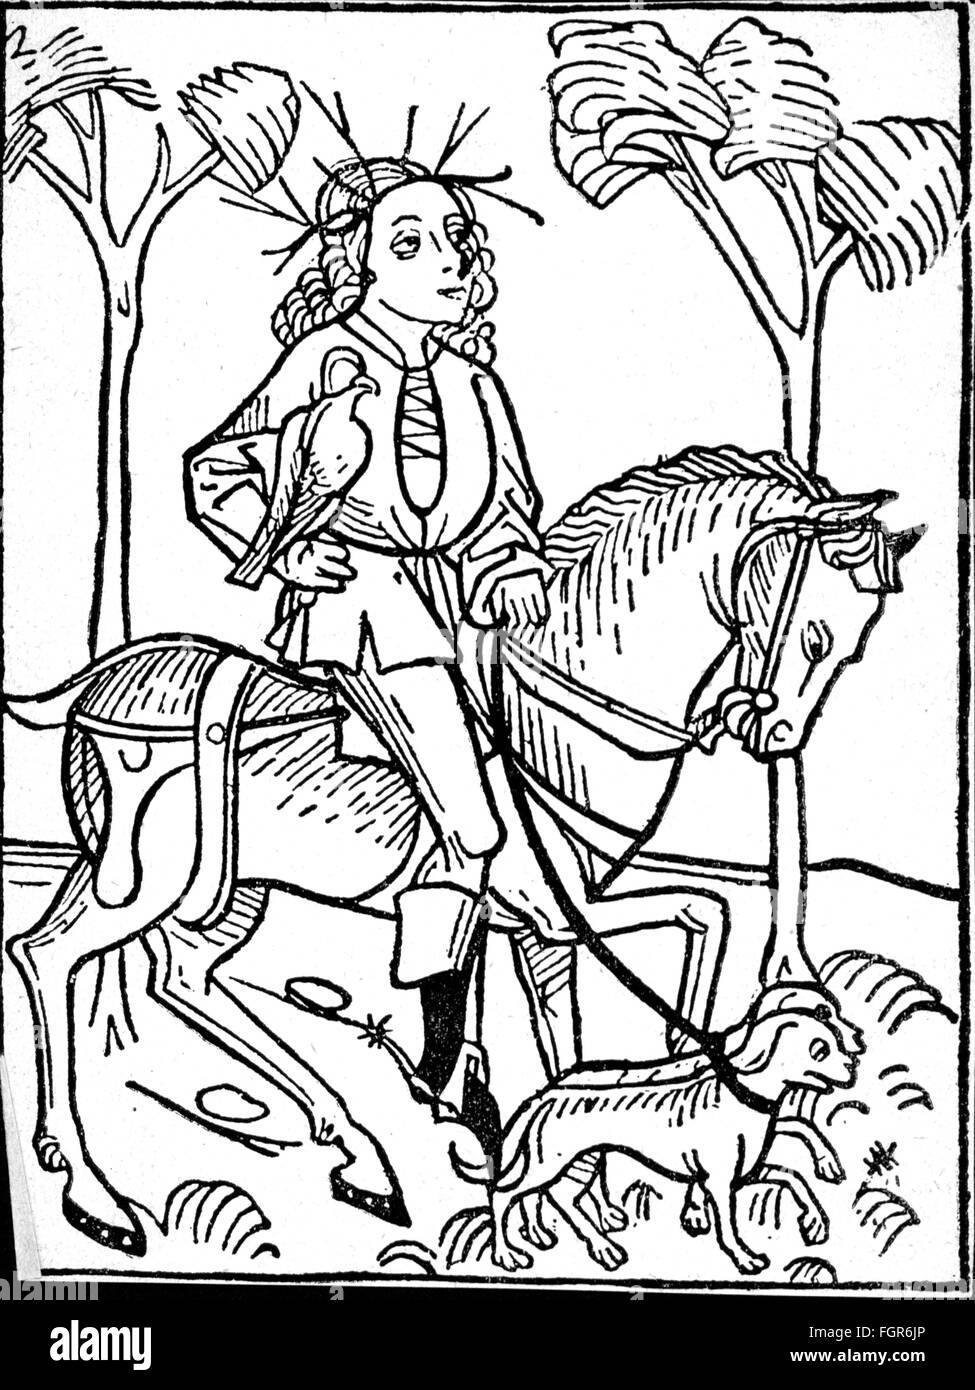 Chasse, chasseurs, un homme nobel est à la chasse, coupe de bois, Augsbourg, 1497, droits additionnels-Clearences-non disponible Banque D'Images